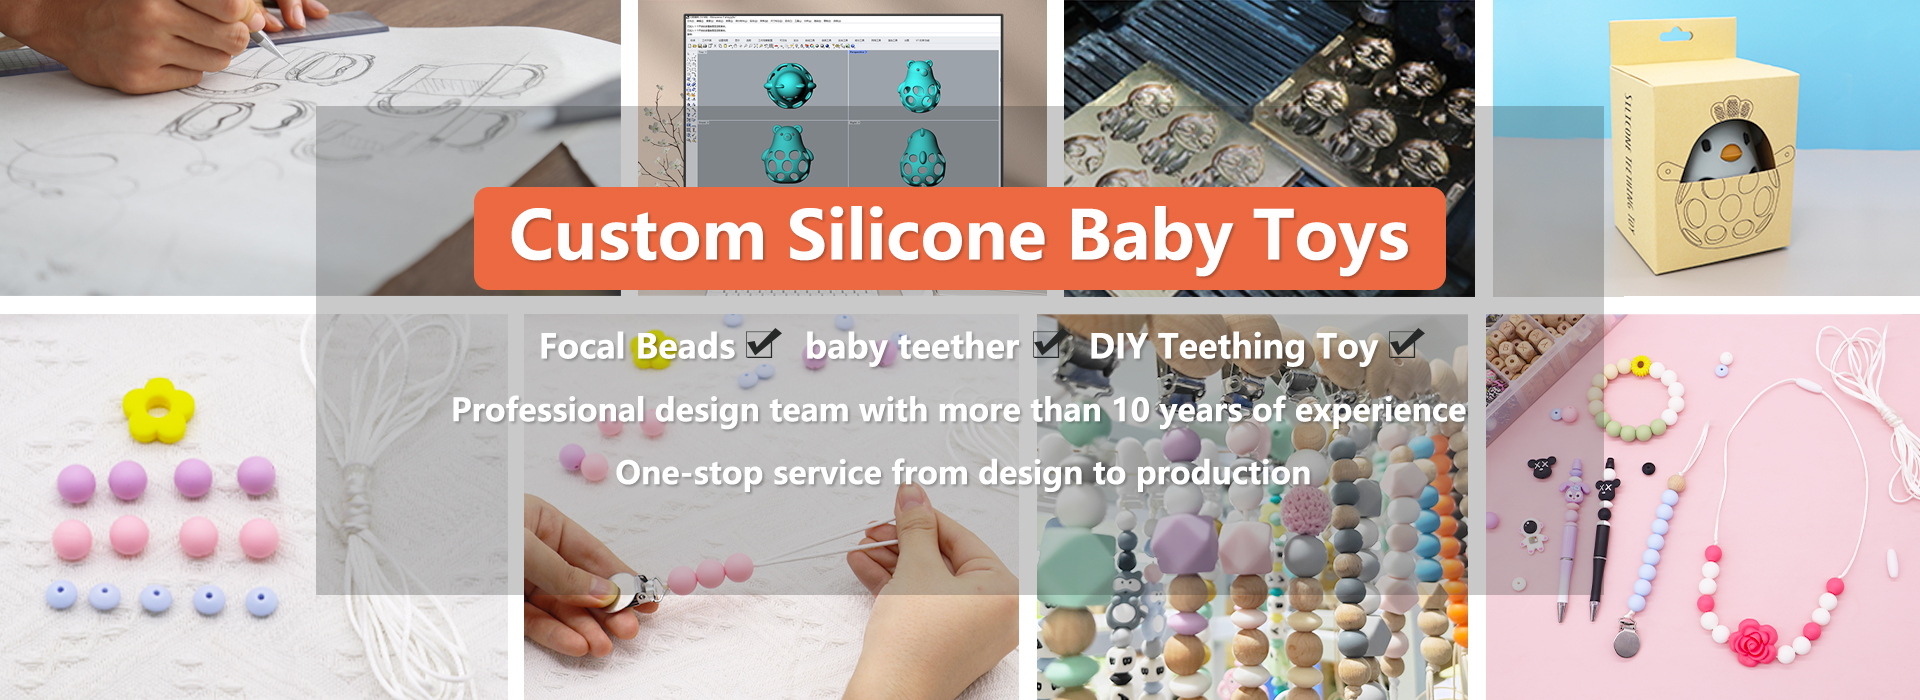 op maat gemaakt siliconen babyspeeltje